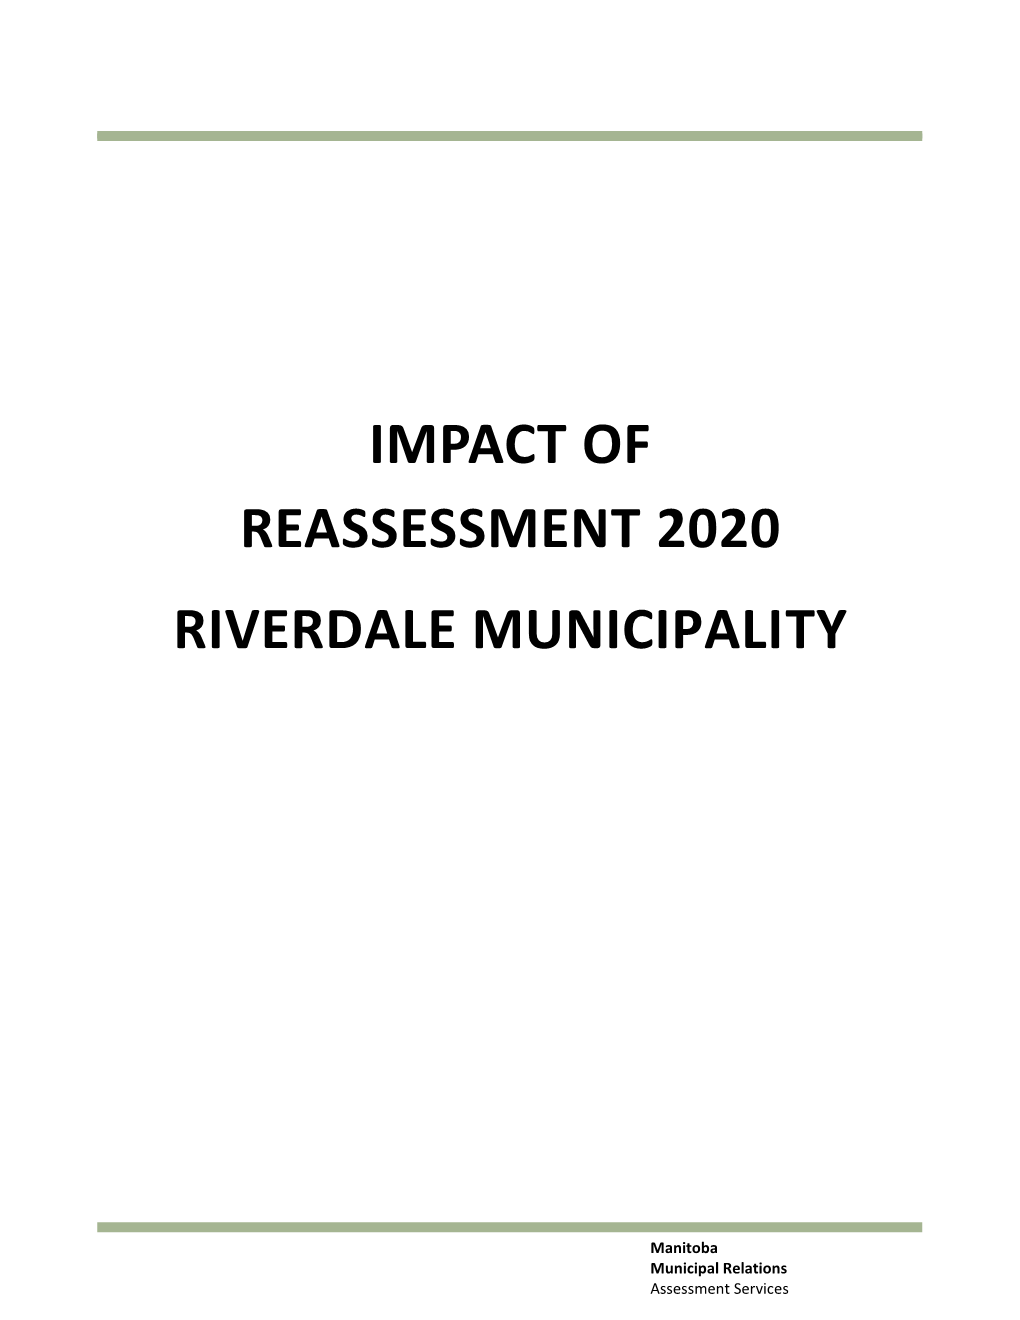 Impact of Reassessment 2020 Riverdale Municipality to Yellowhead